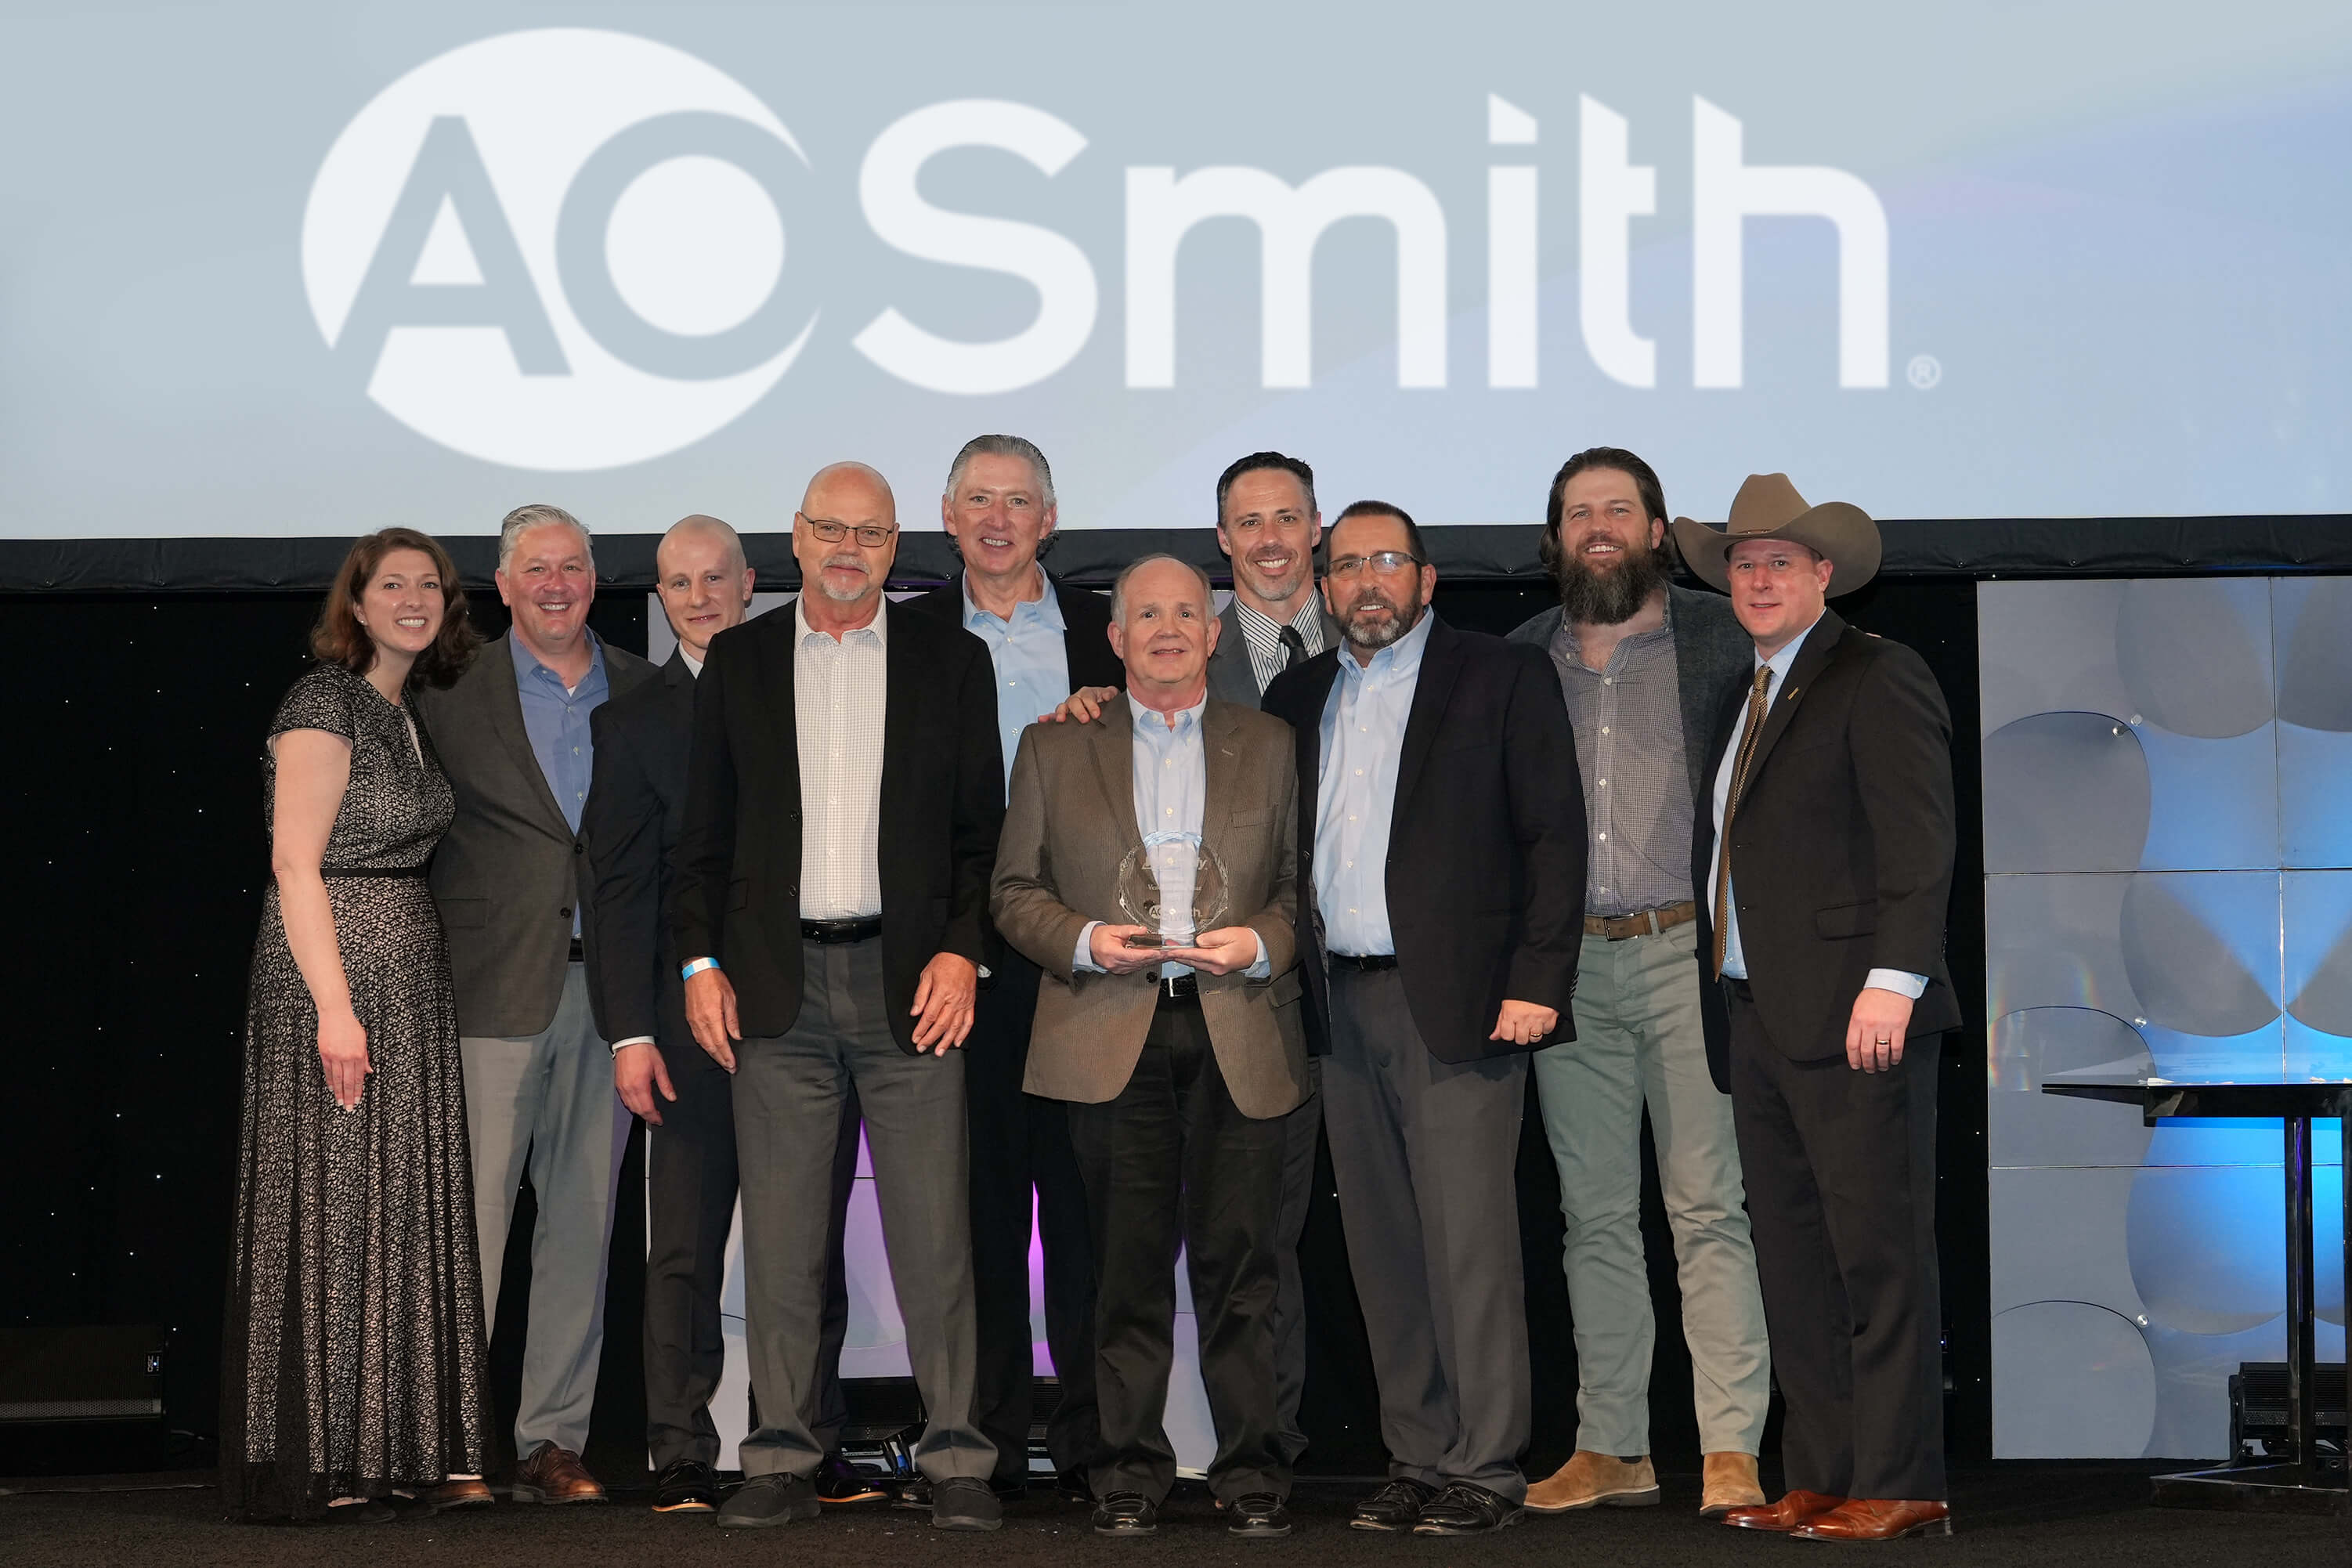 The A. O. Smith team 